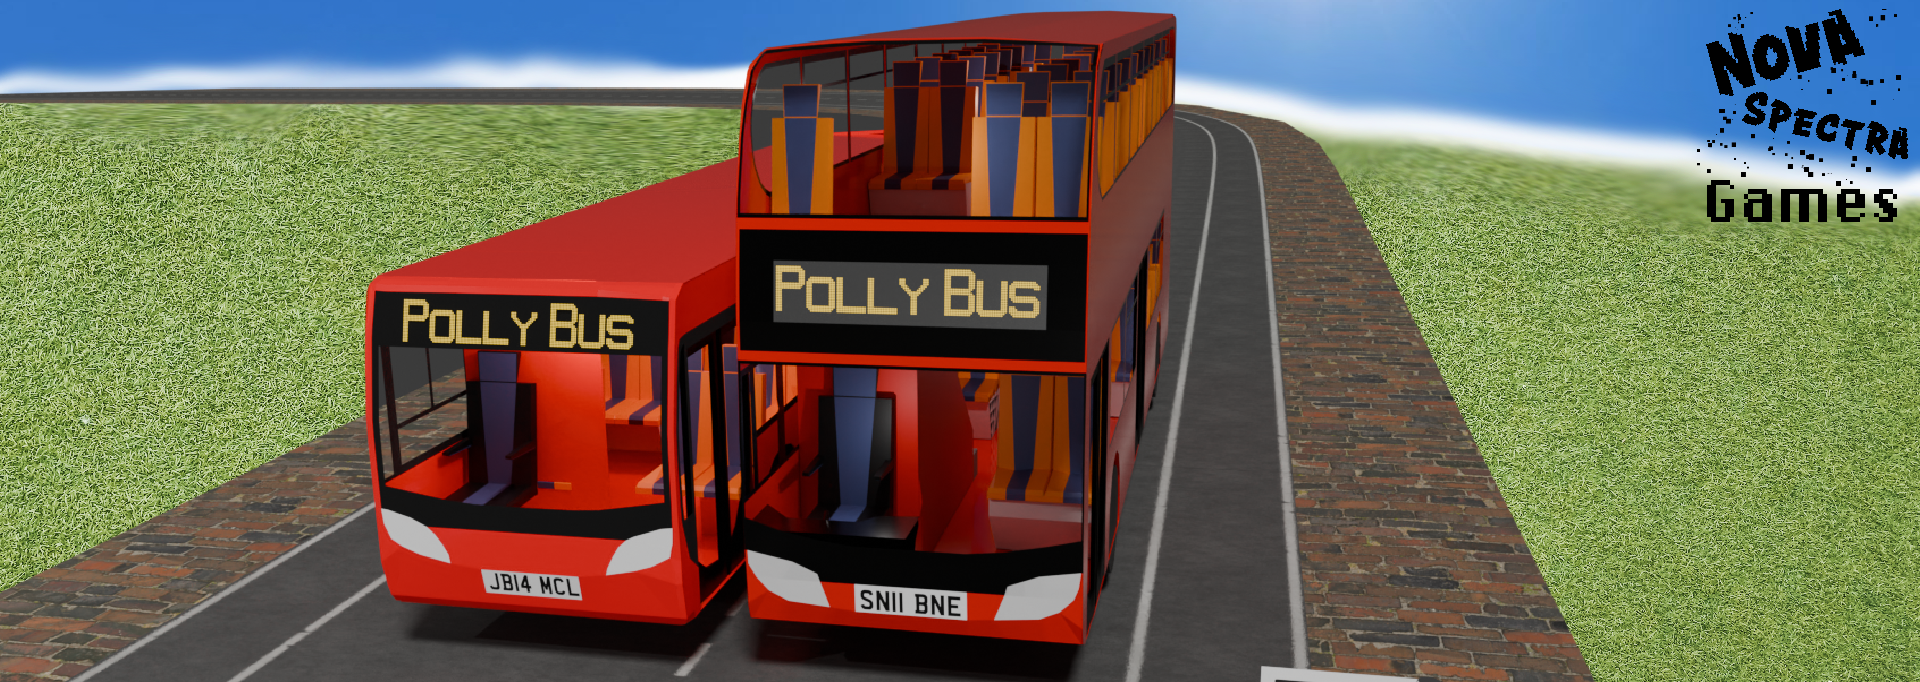 Polly Bus